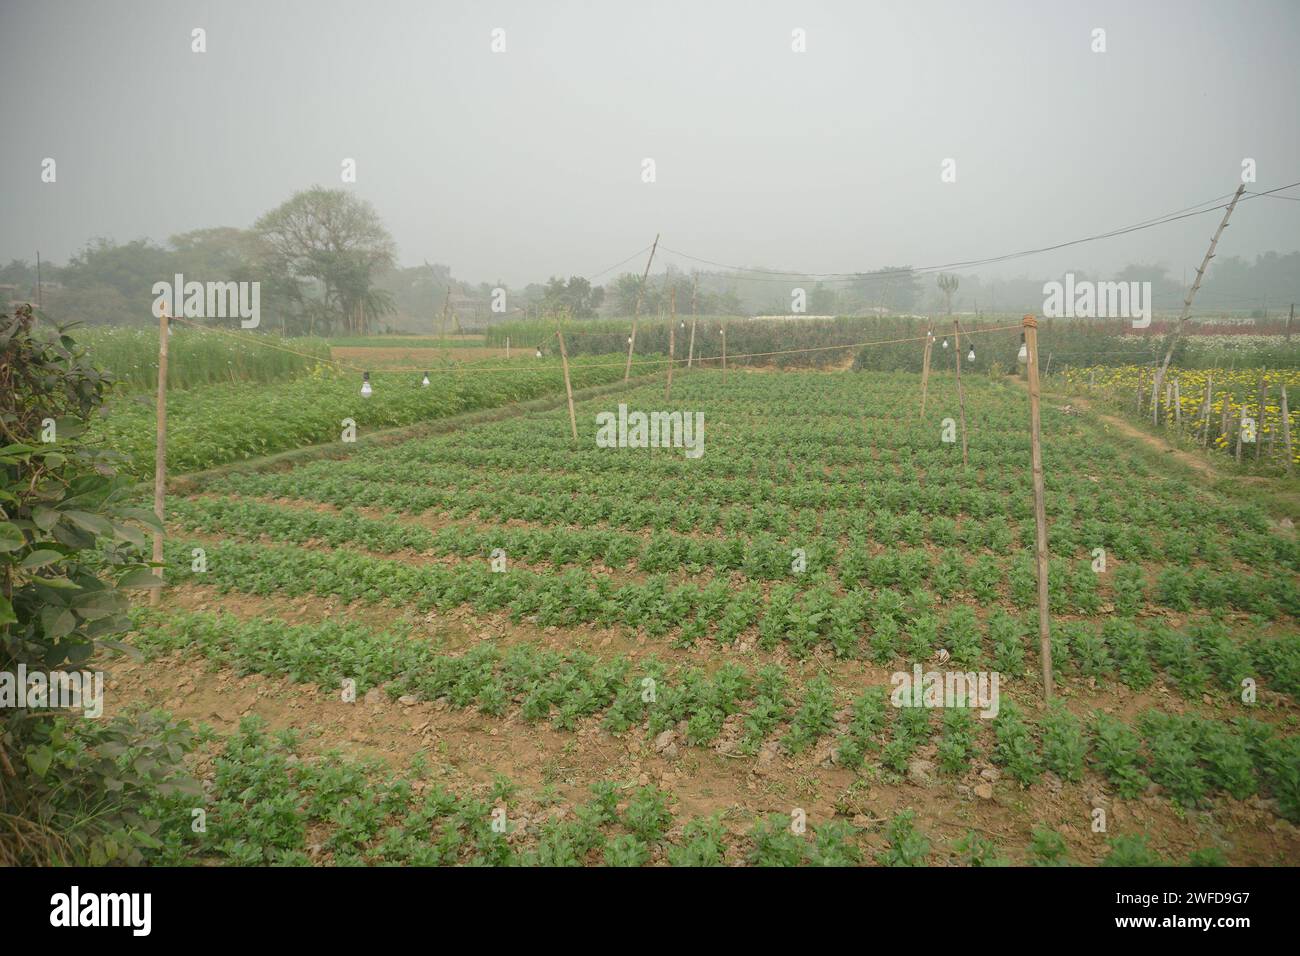 Kohl wird auf einem weiten Feld in Khirai, Westbengalen, Indien geerntet. Kohl, Brassica oleracea, ist eine grüne Biennalpflanze, die jährlich angebaut wird Stockfoto